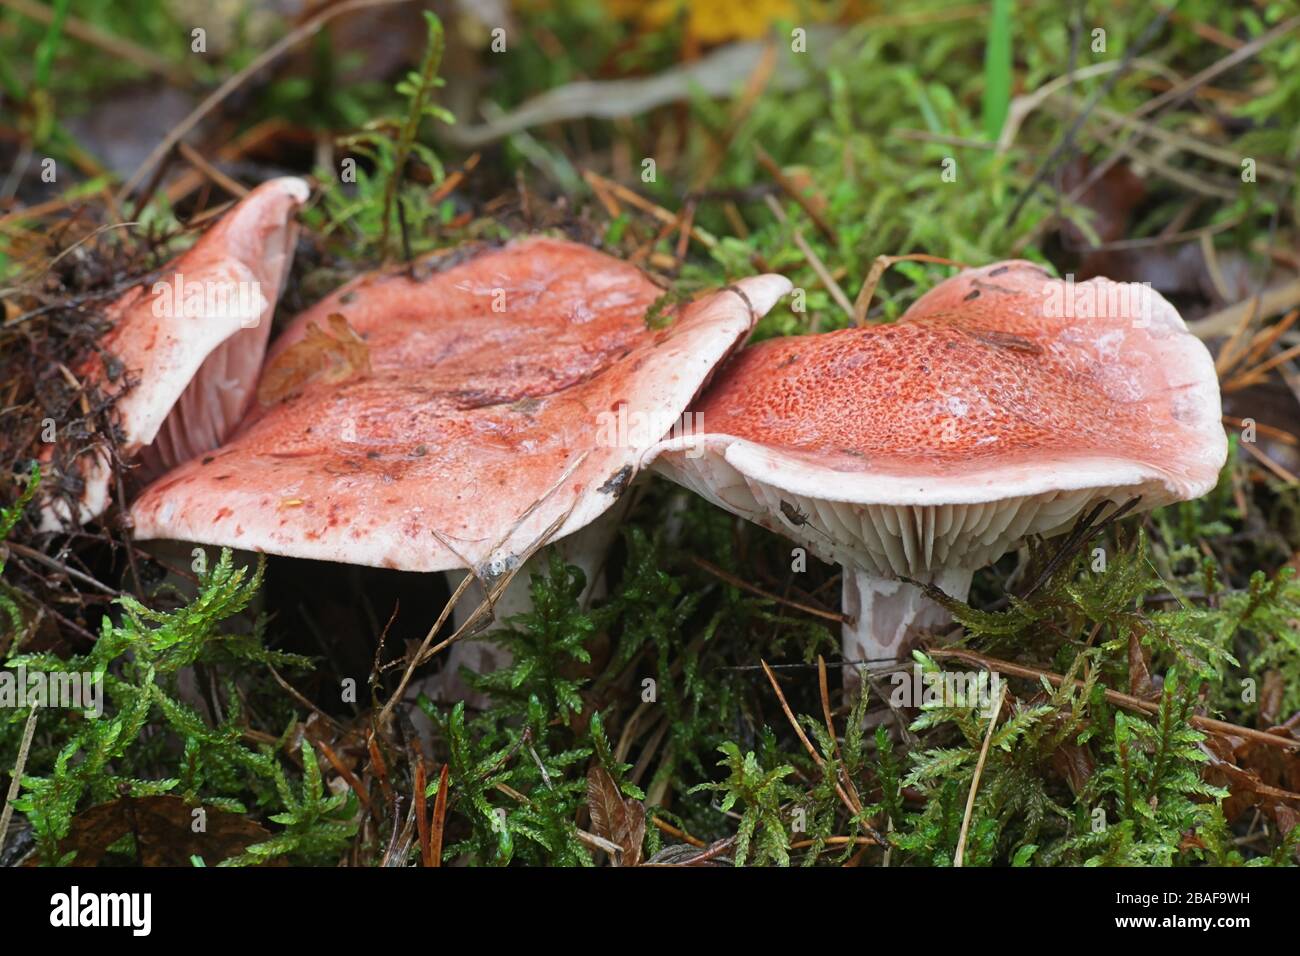 Hygrophorus erubescens, bekannt als geblochtes Holzwachs oder rosafarbene Wachskappe, Wildpilze aus Finnland Stockfoto